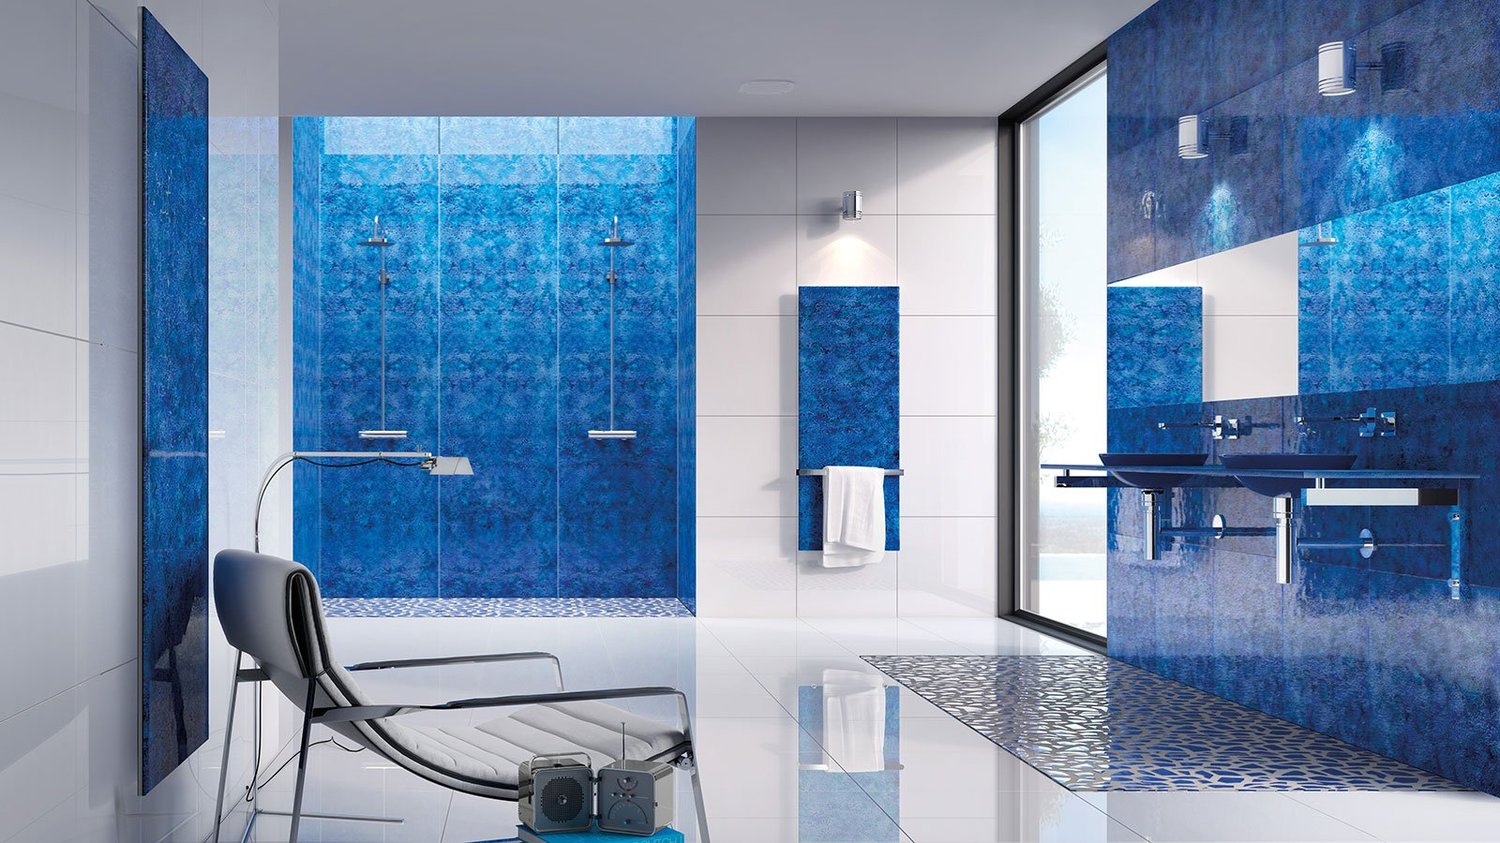 Vetro glass countertop luxury bathroom